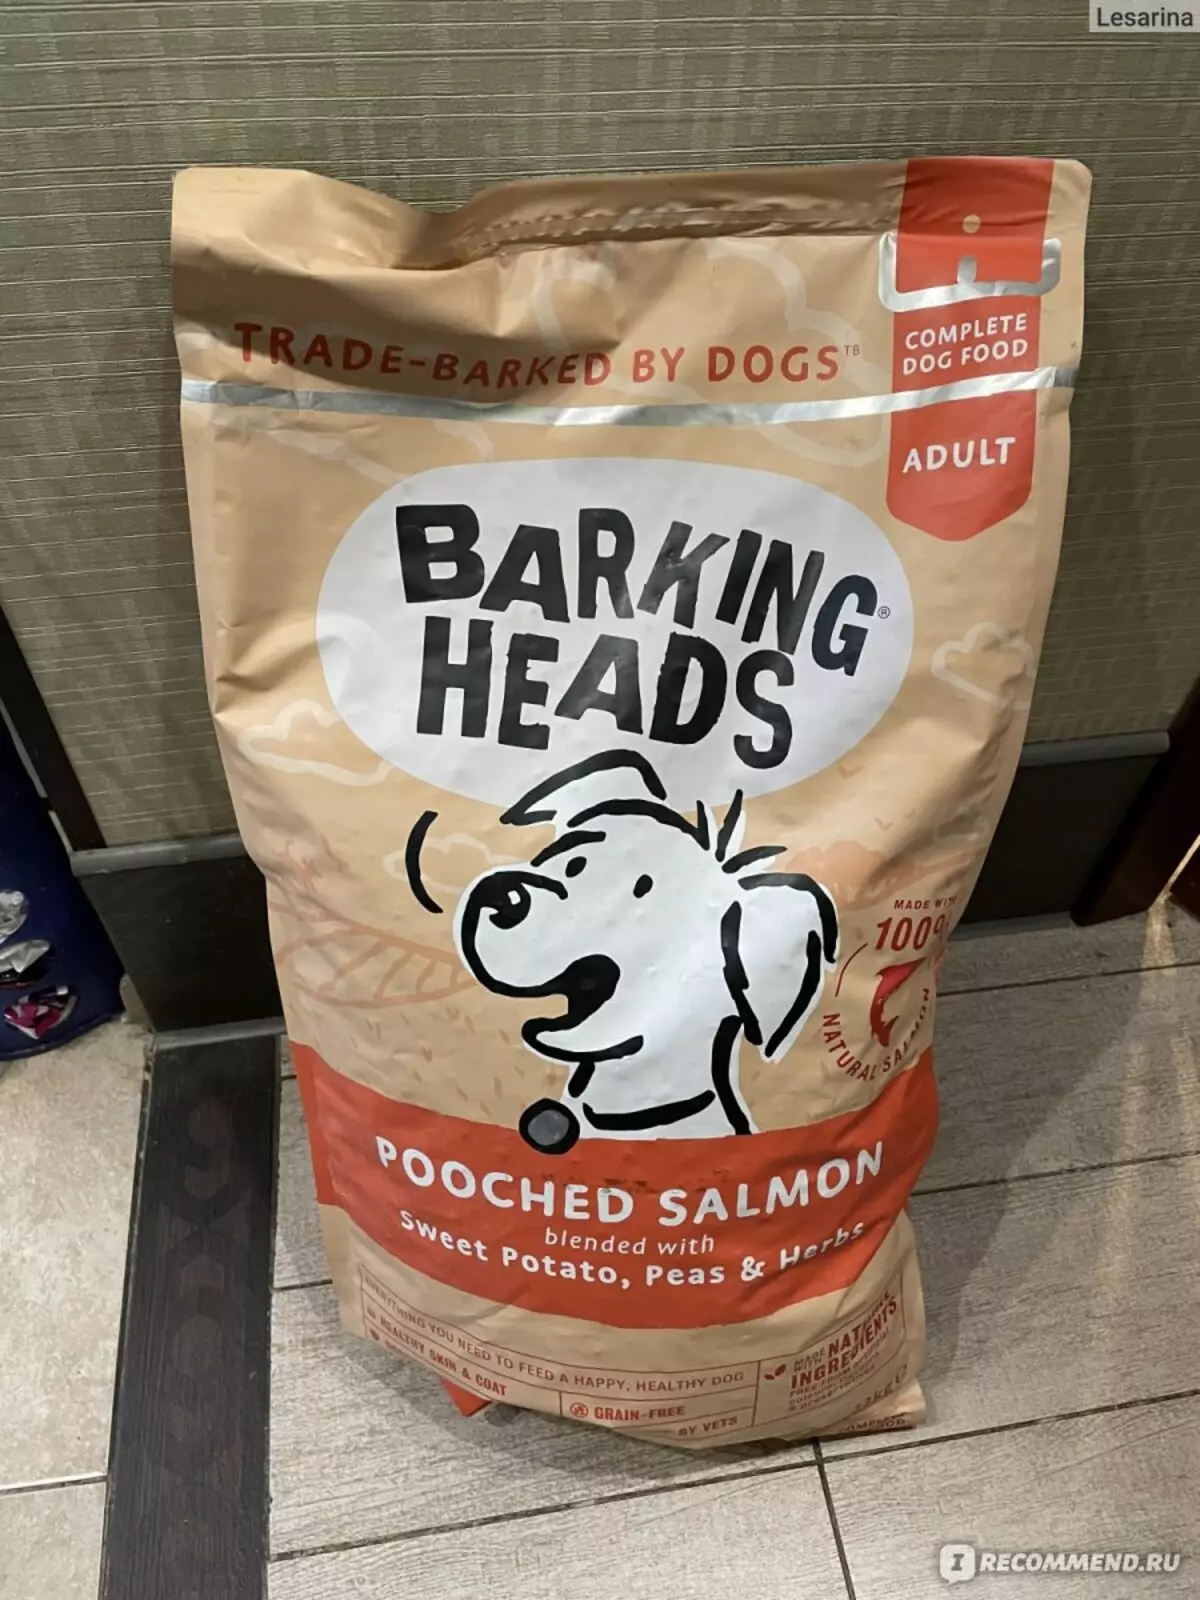 Alimentar Caps Barking: Pels gats, gossos i gats. Assecar fabricant d'aliments per mascotes 